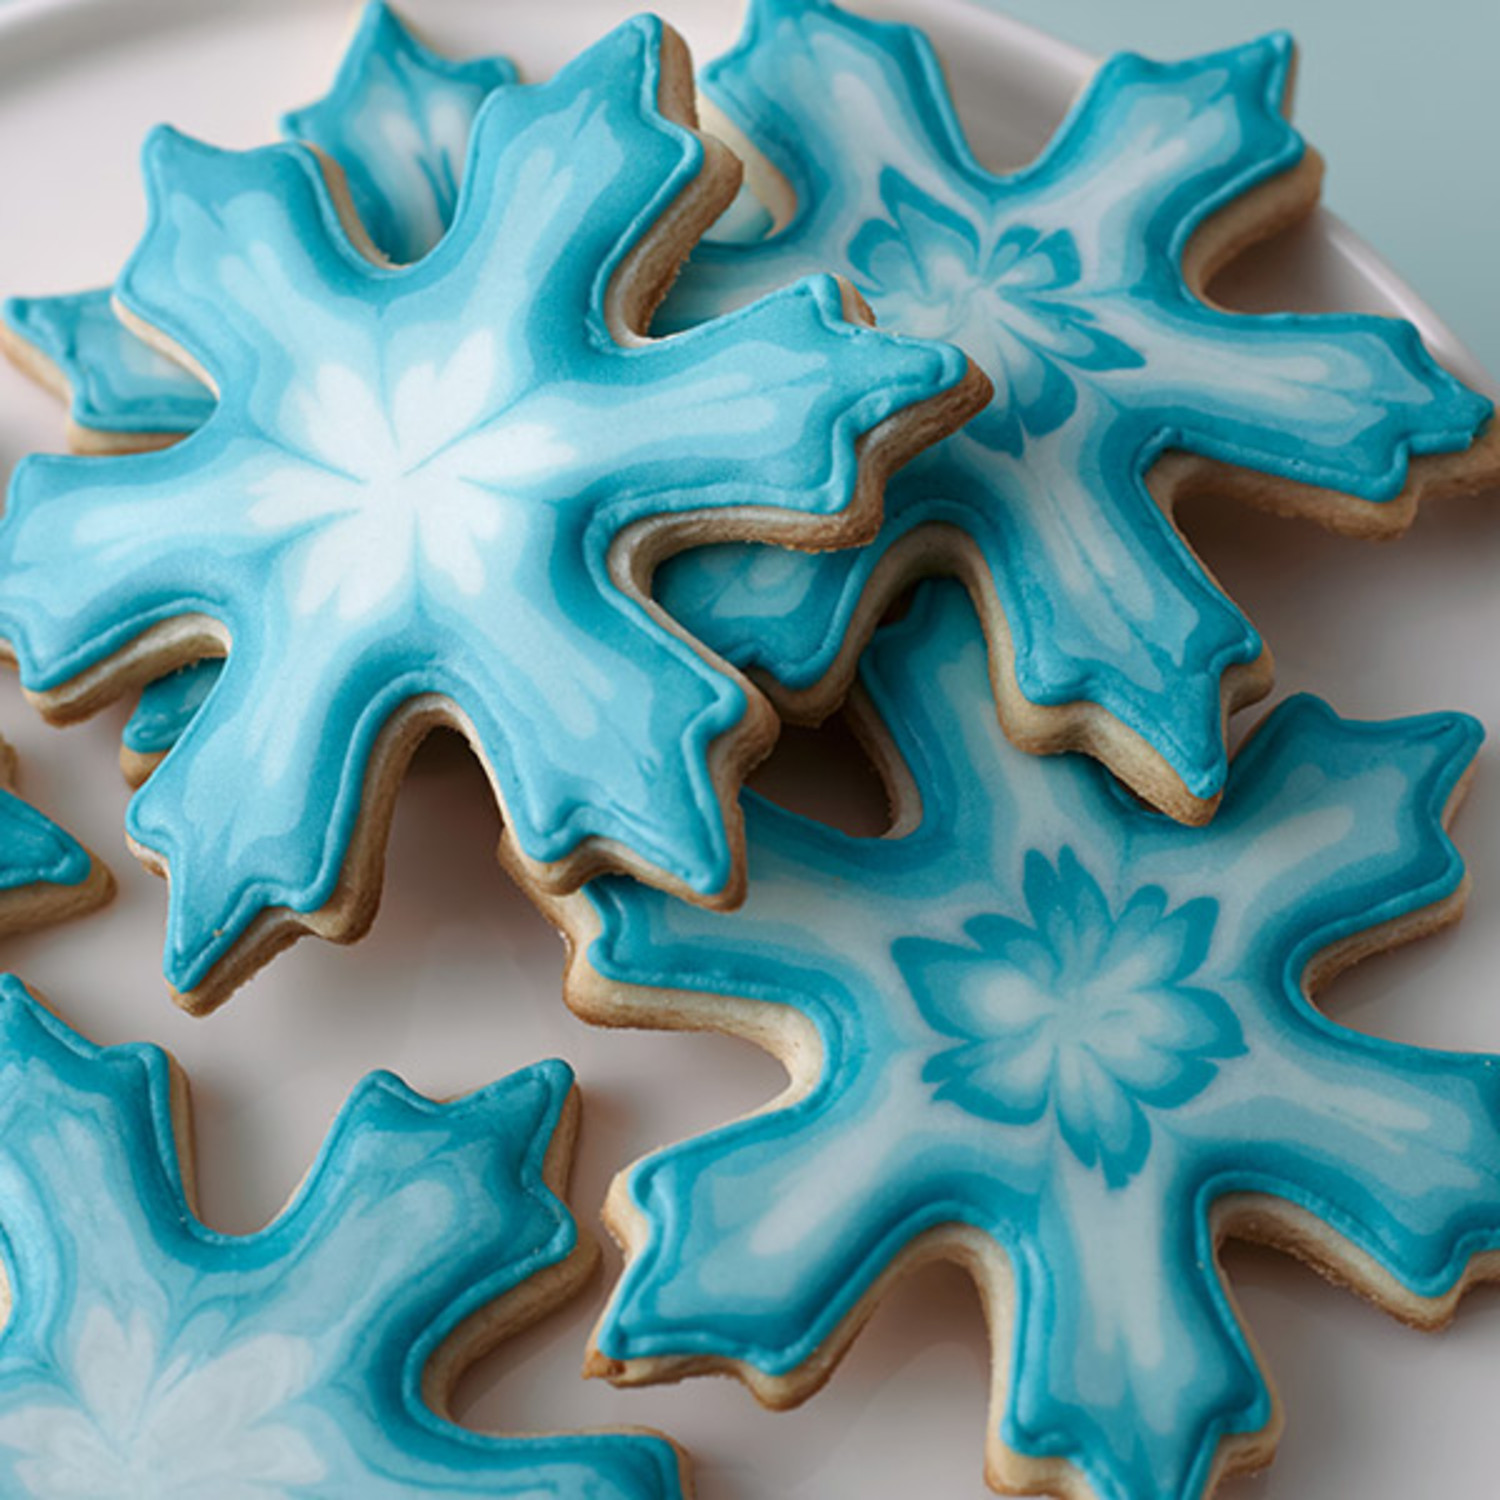 Patterned Snowflake Cookies